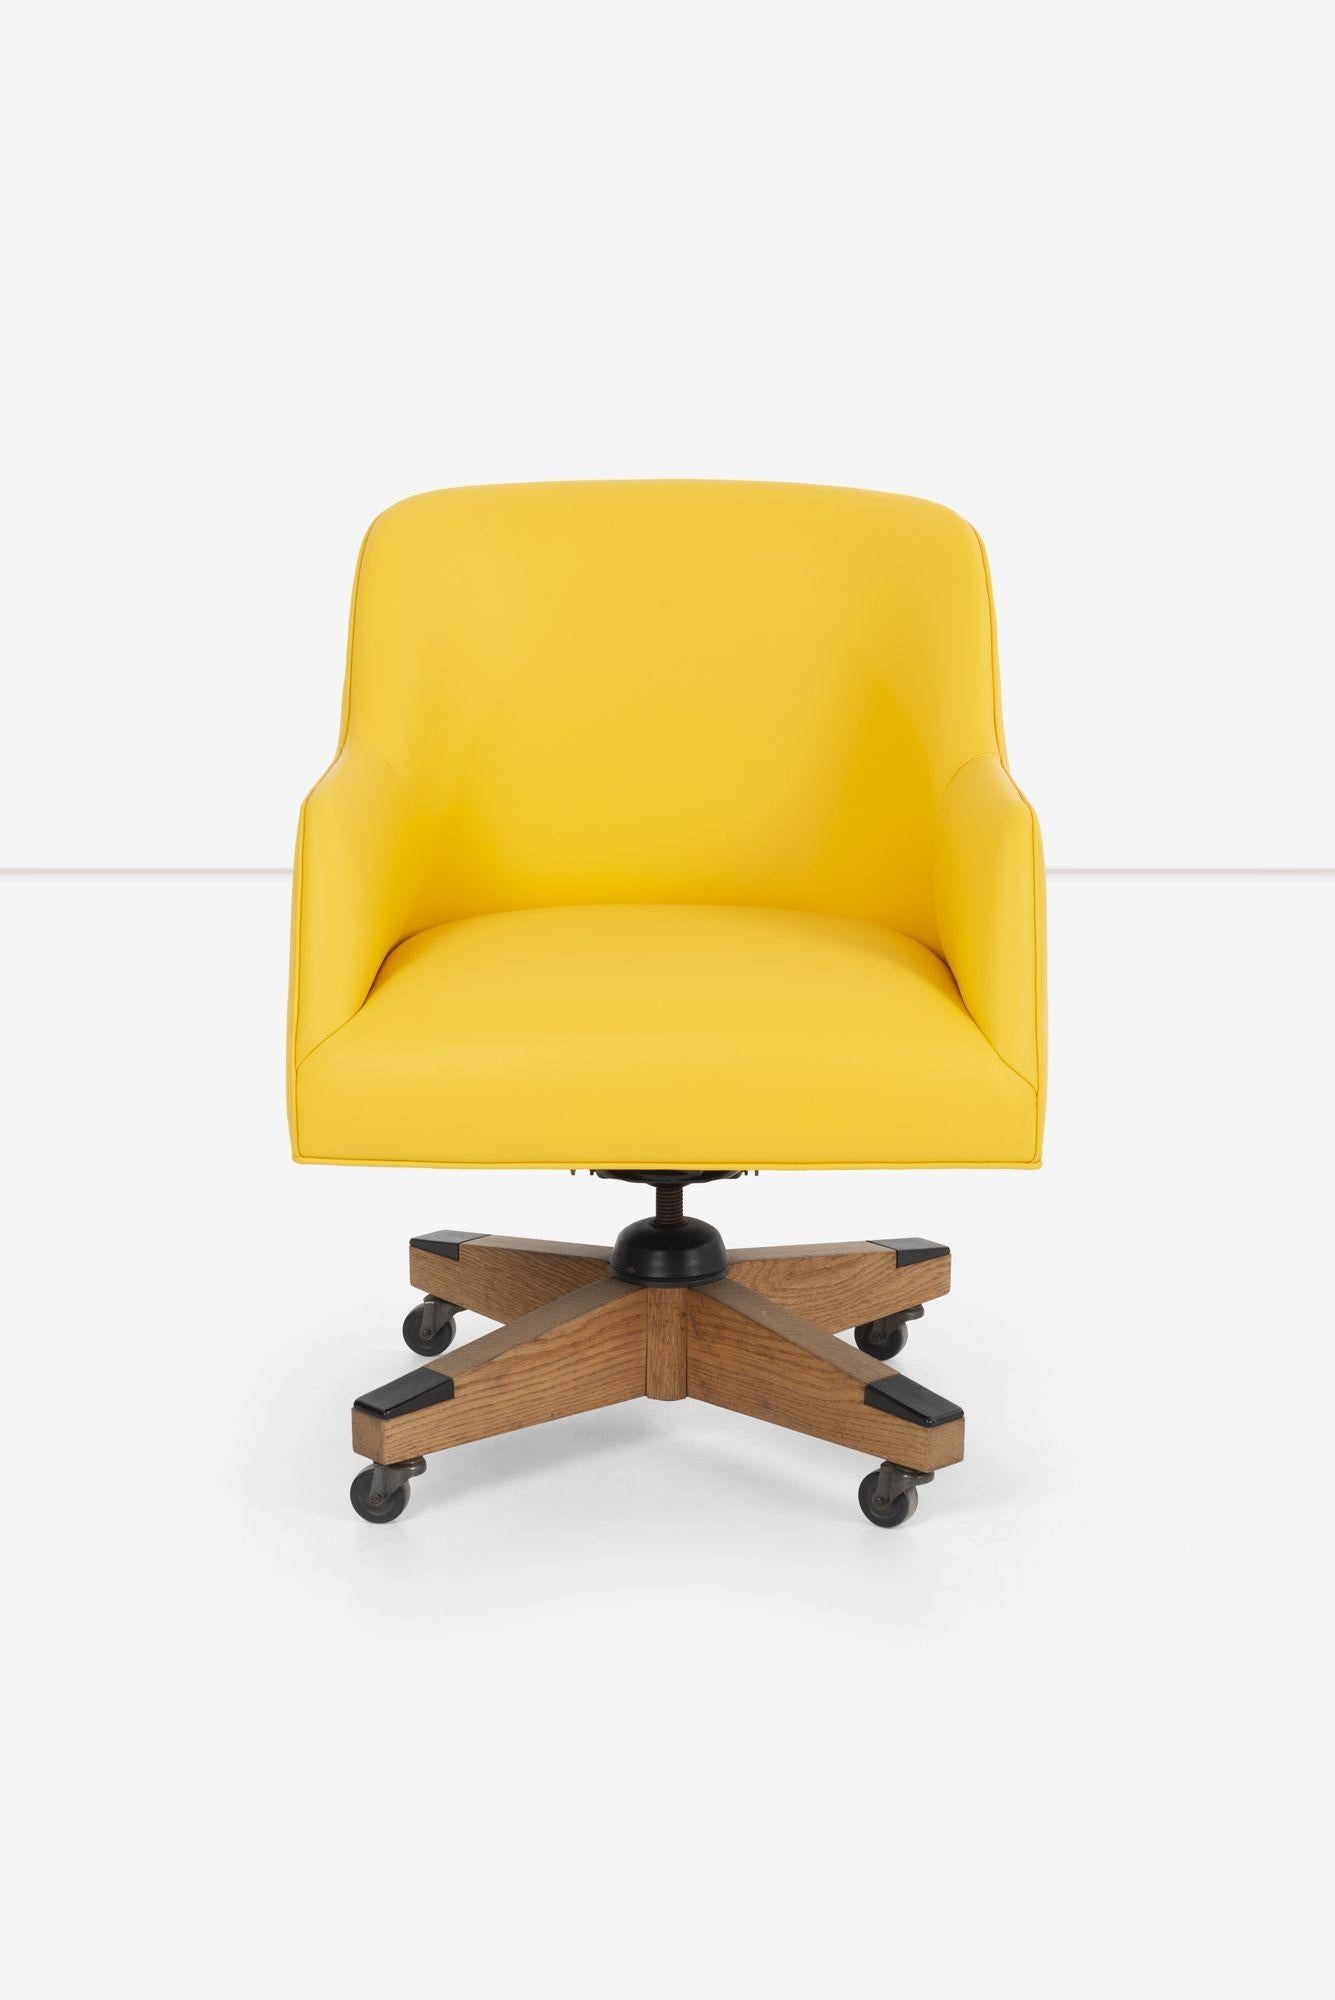 Jens Risom Schreibtischstuhl, Untergestell aus massiver Eiche, neu gepolstert mit gelbem Spinneybeck-Leder, Sitz verstellbar, neig- und schwenkbar
 
Maße: H: 31.5